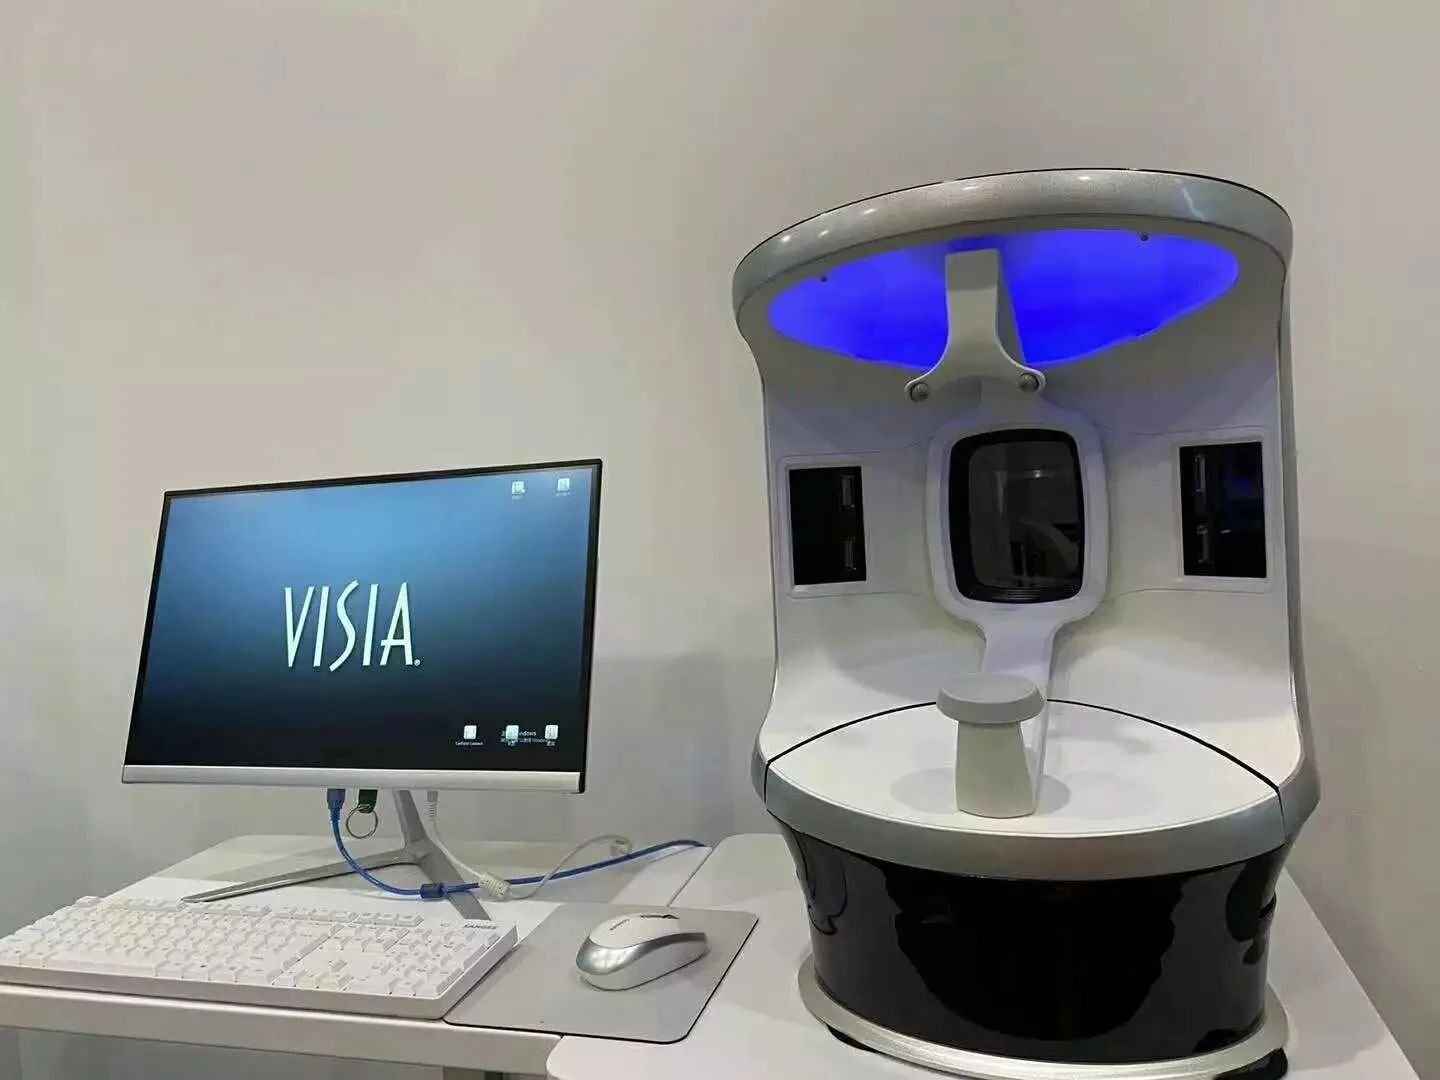 

2021 расширенный волшебный зеркальный анализатор кожи, сканер кожи, УФ RGB PL анализатор, машина VISA 7